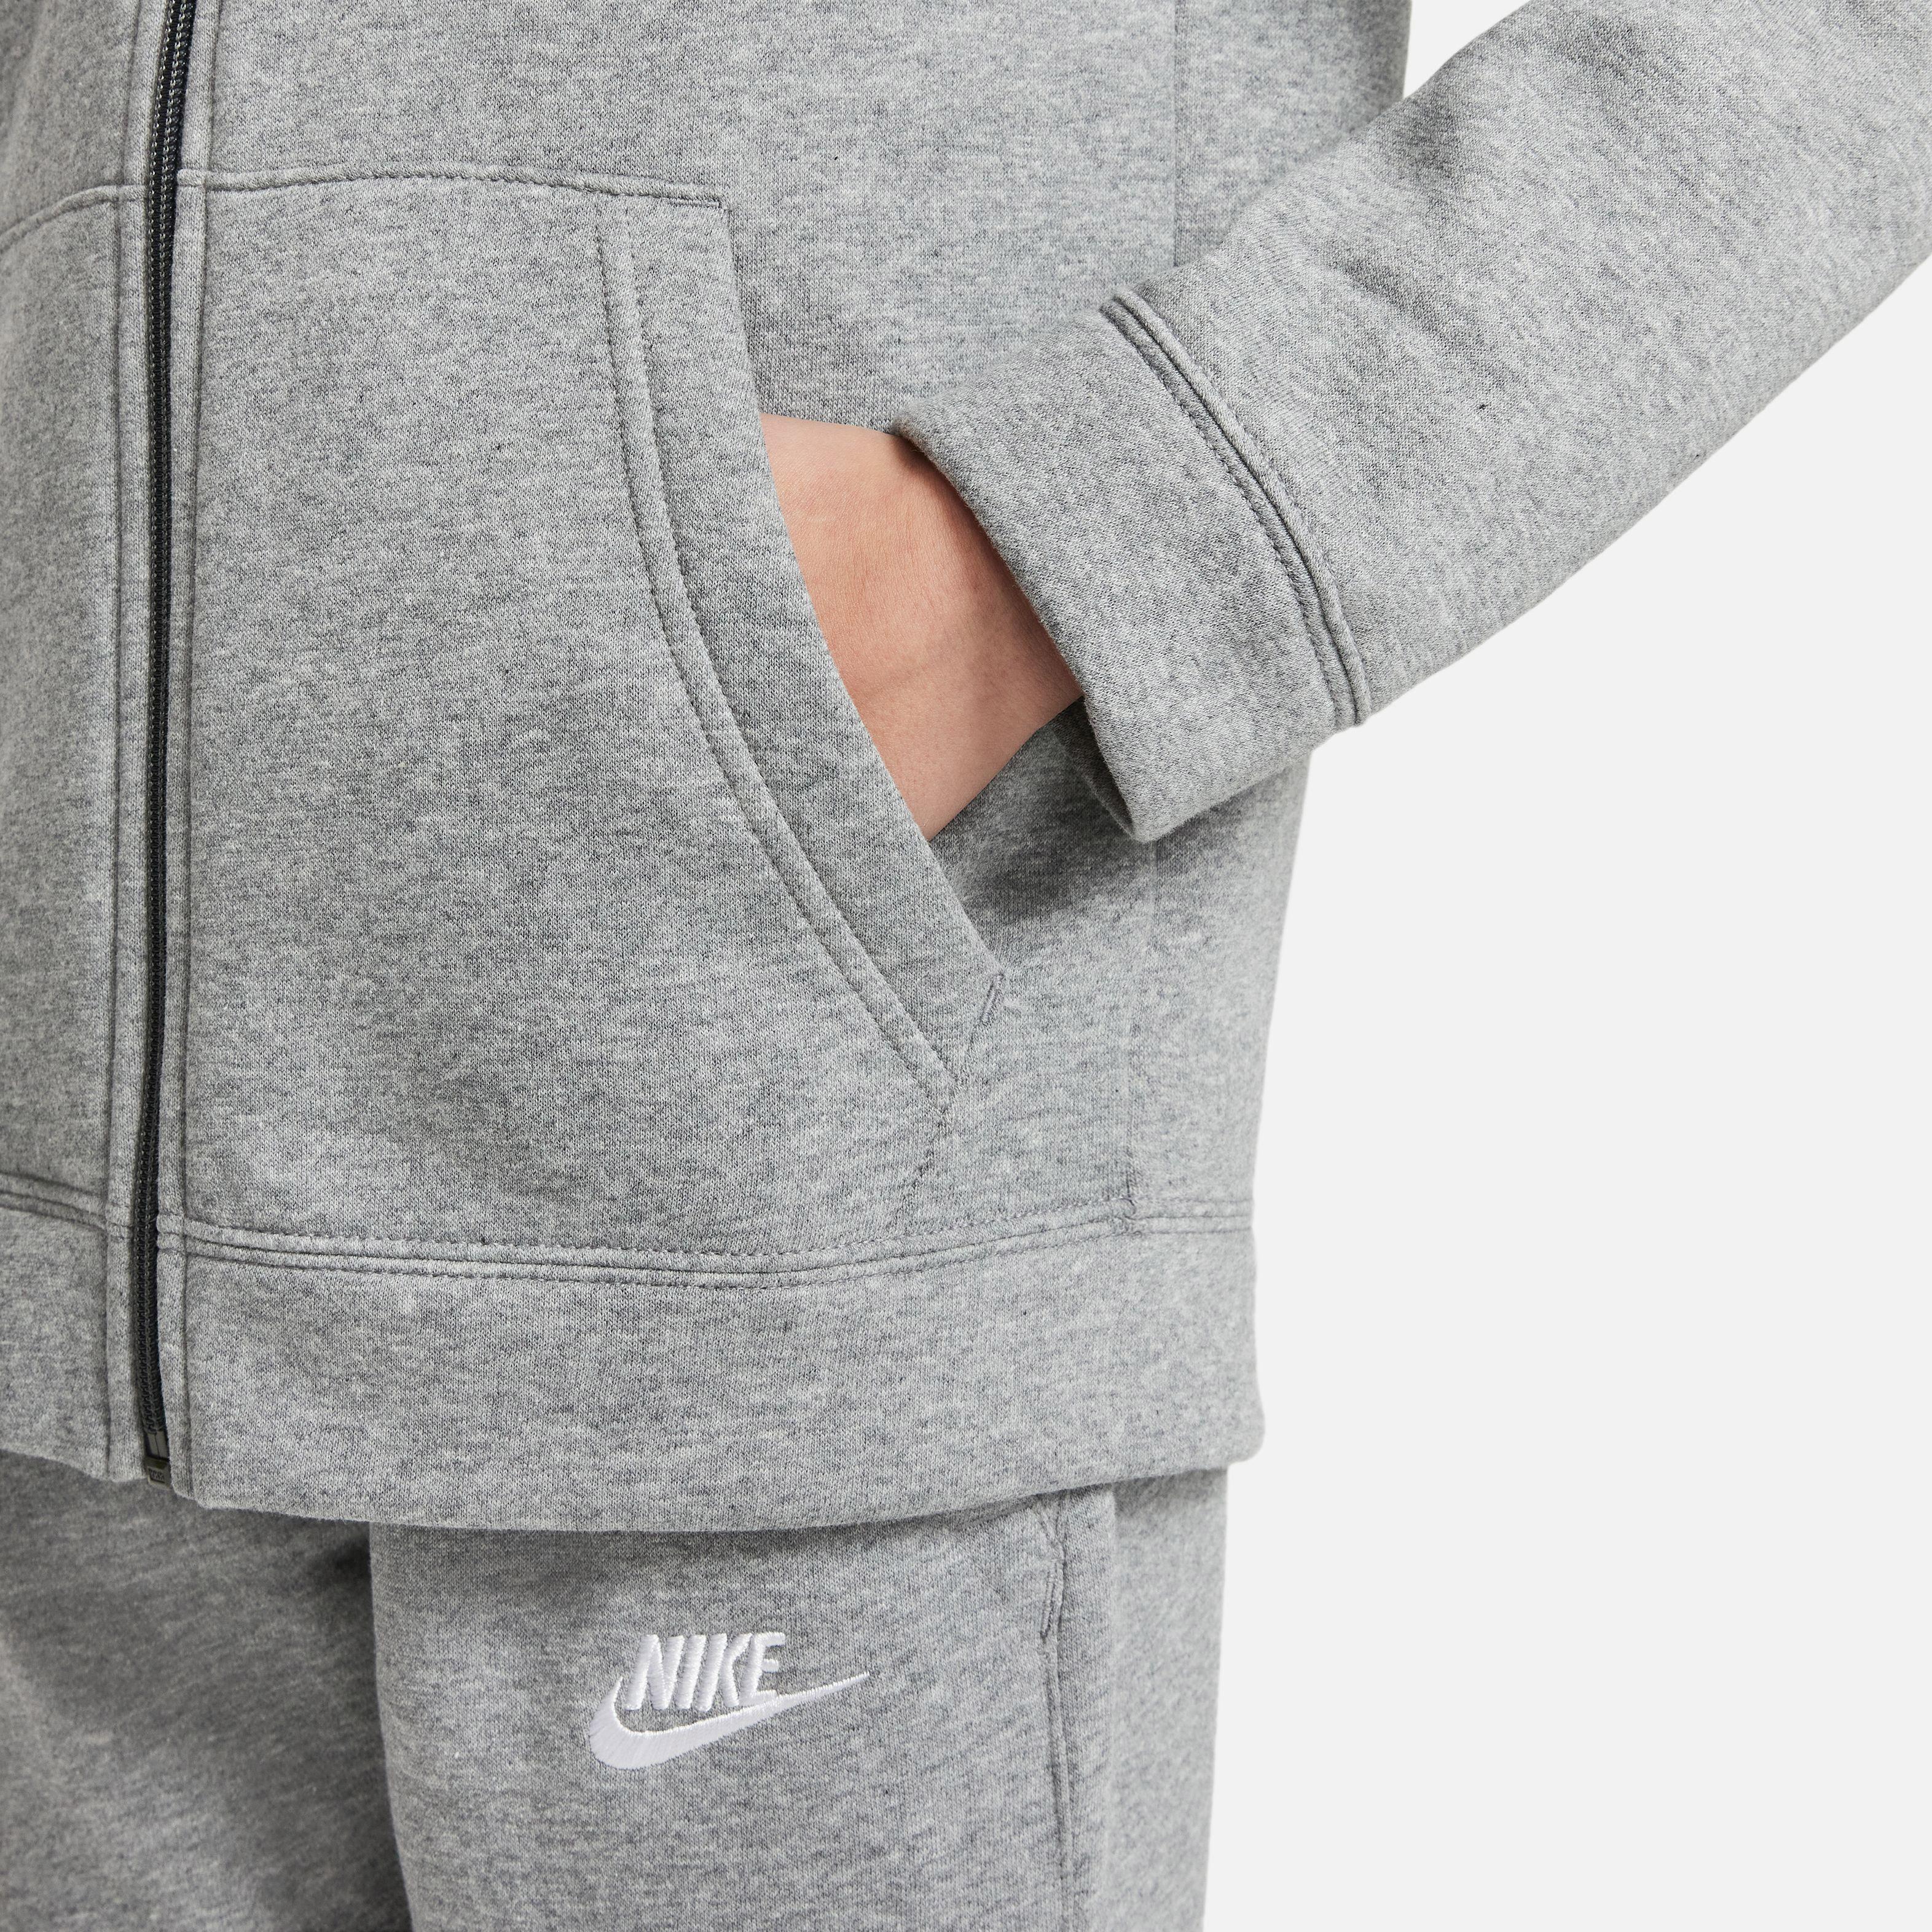 Online CORE carbon SportScheck Jungen im grey-white kaufen Nike Trainingsanzug NSW heather-dark von Shop